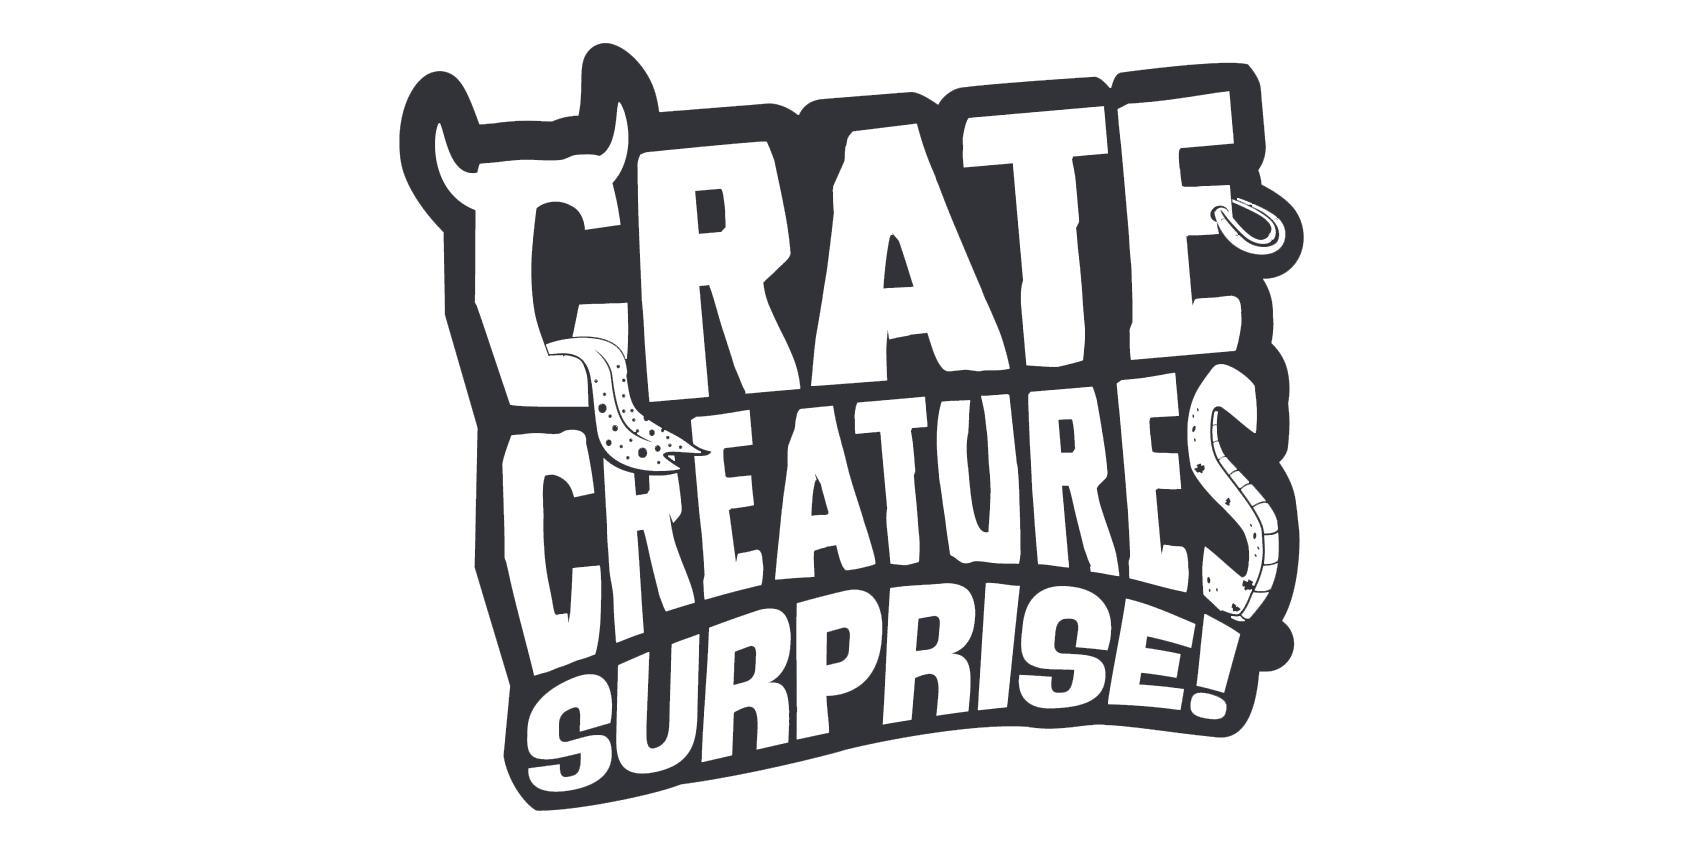 Crate Сreatures